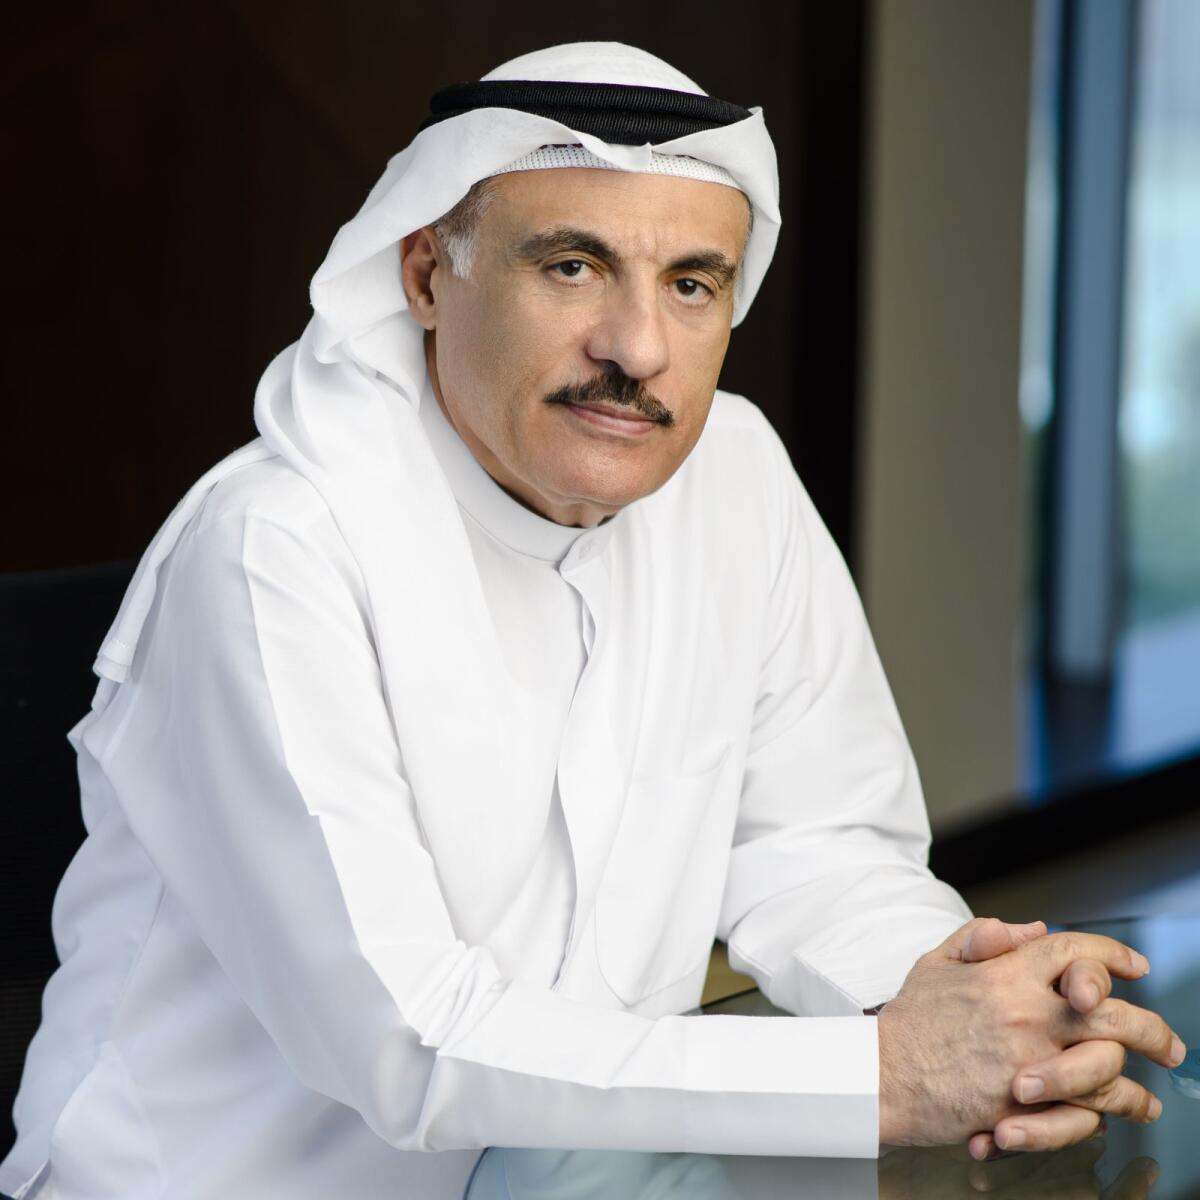 Mohammad Ali Al Ansari, Chairman of Al Ansari Financial Services. - Supplied photo